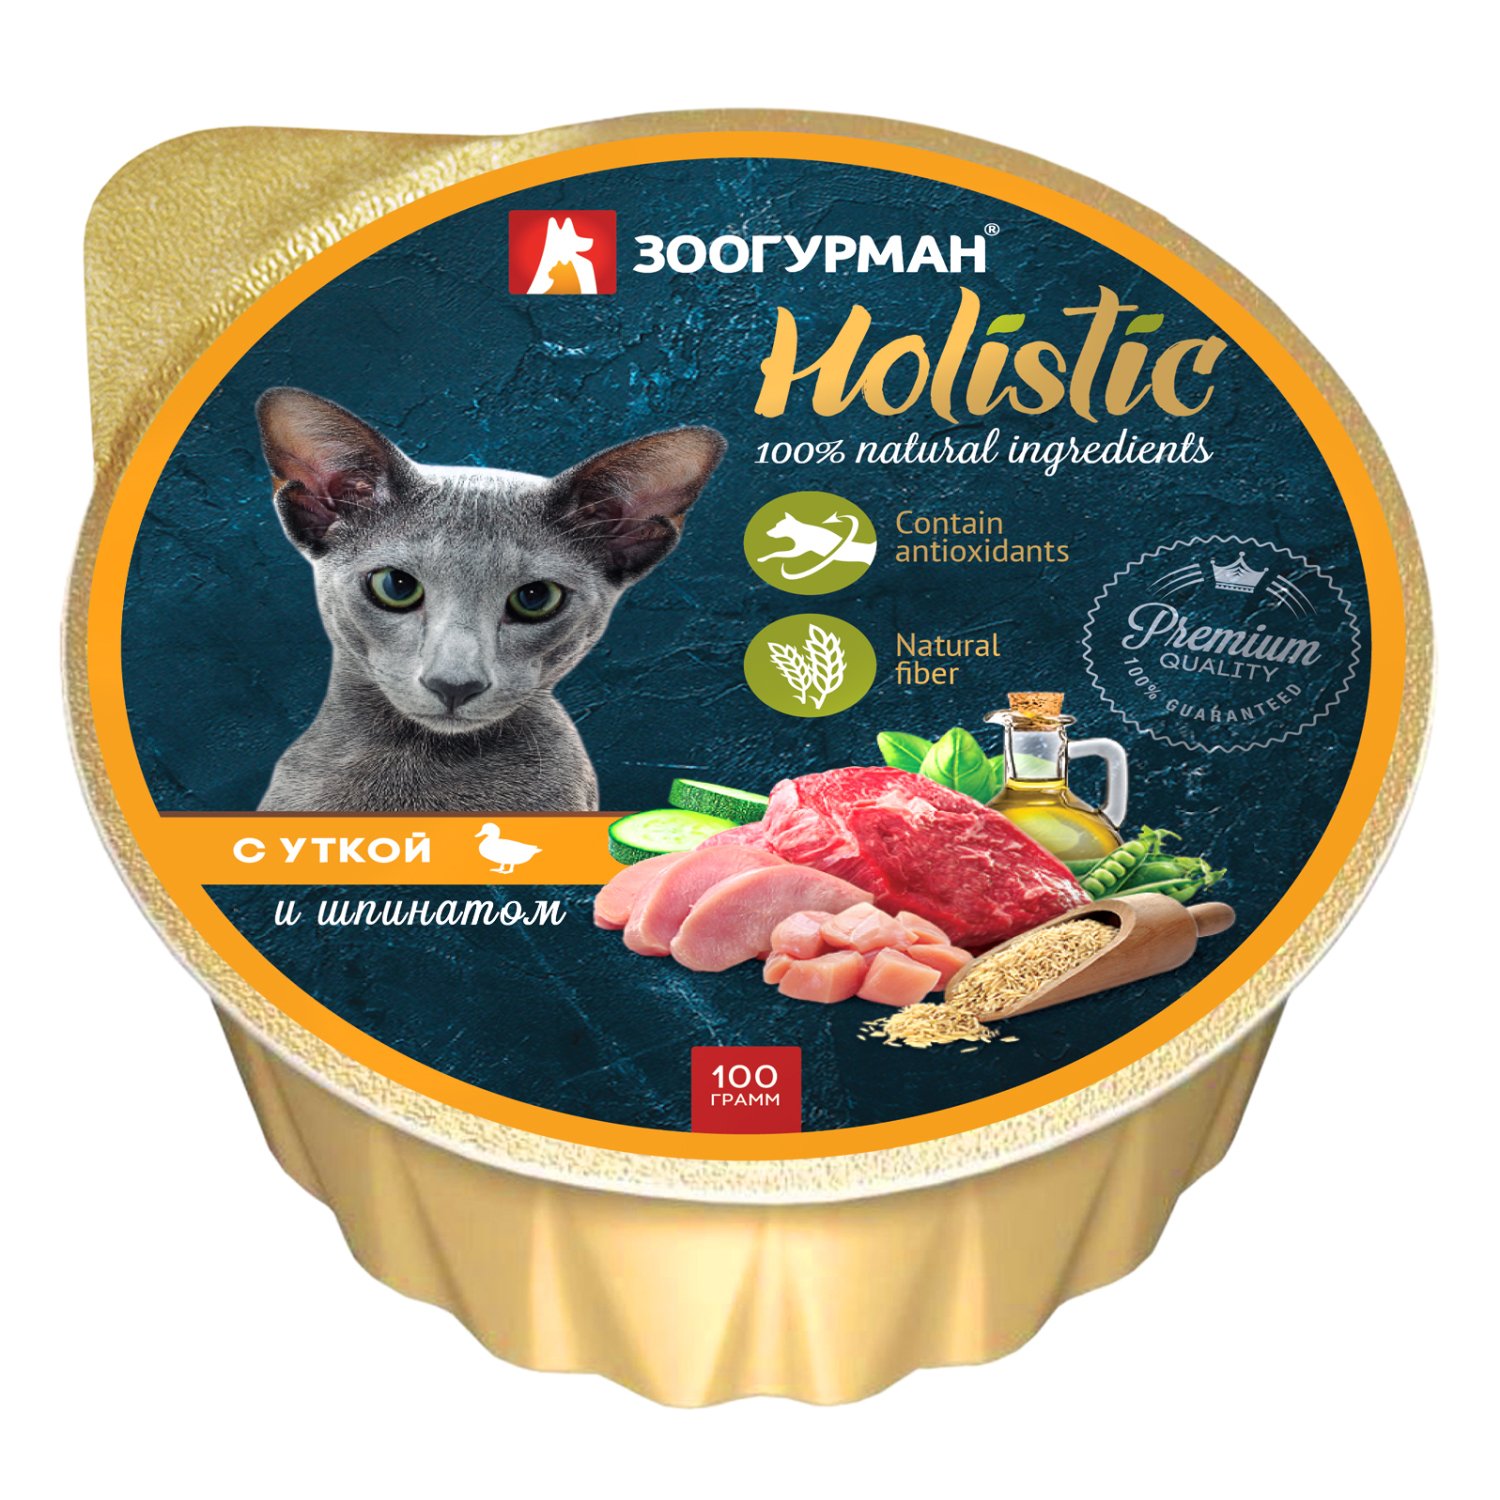 Корм влажный для кошек Зоогурман 100г Holistic с уткой и шпинатом консервированный - фото 1